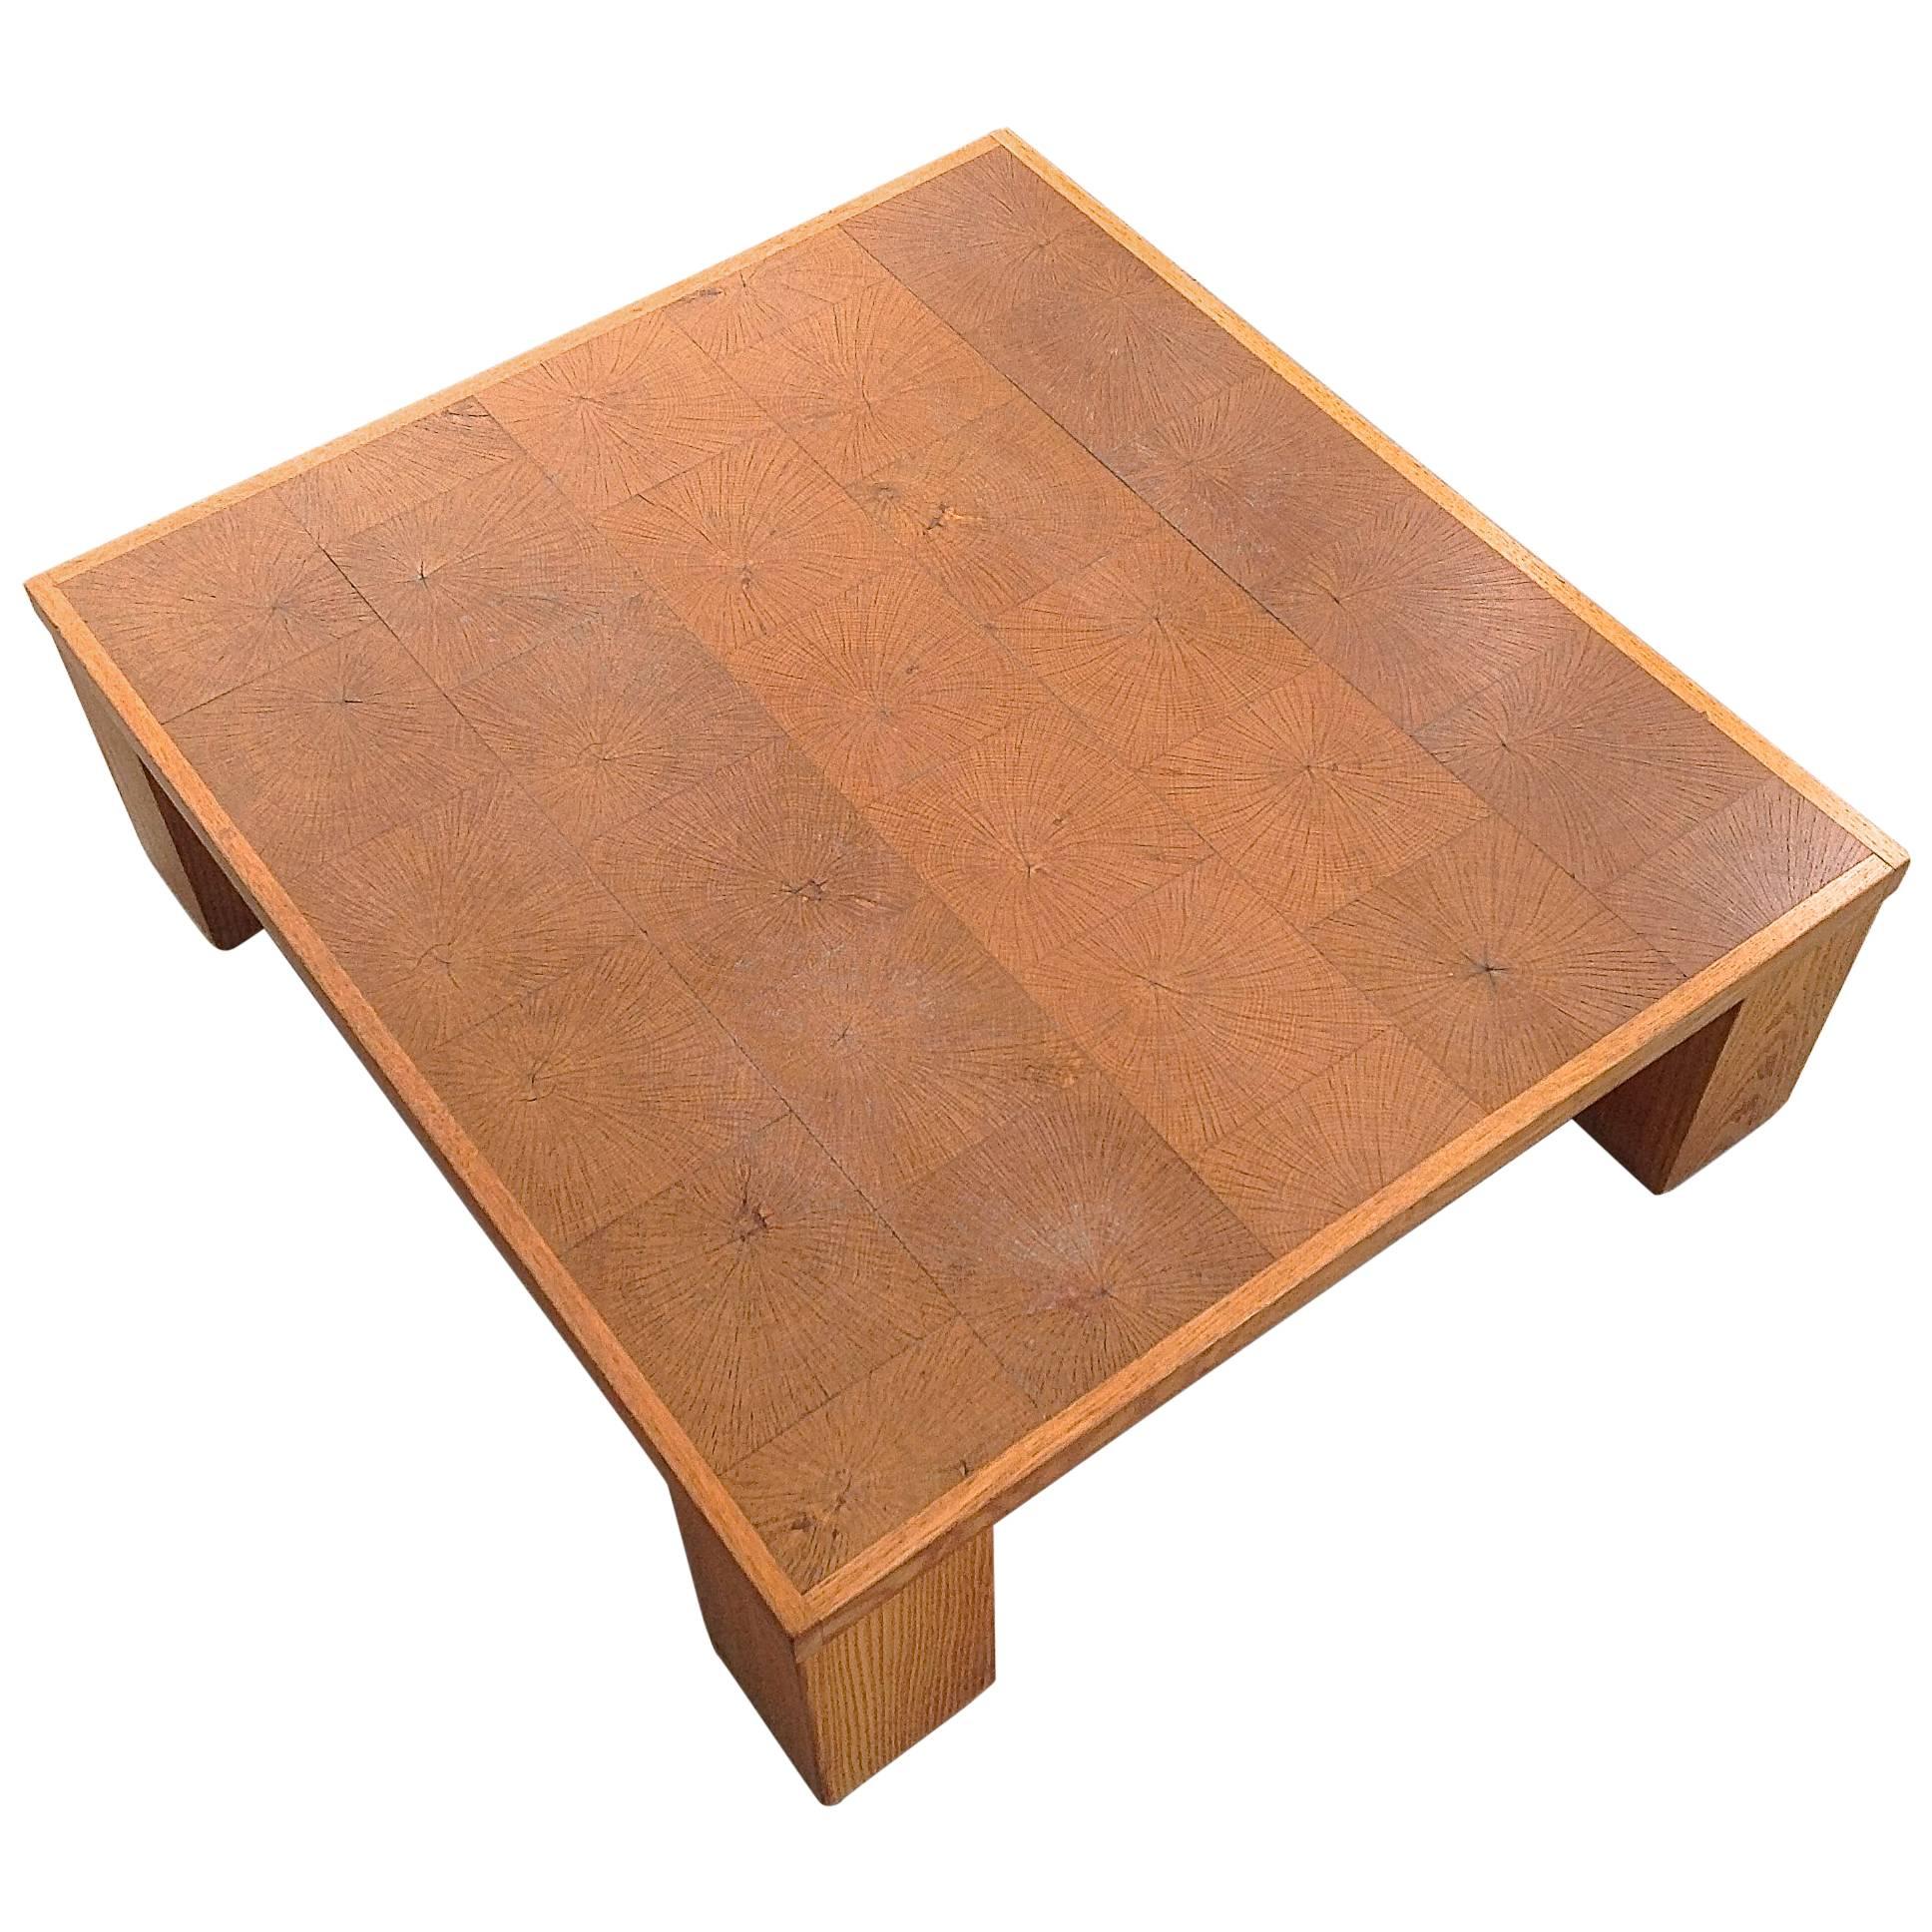 Elegant Coffee Table in Solid Oak Block Wood by Emiel Veranneman, Anno, 1969 For Sale